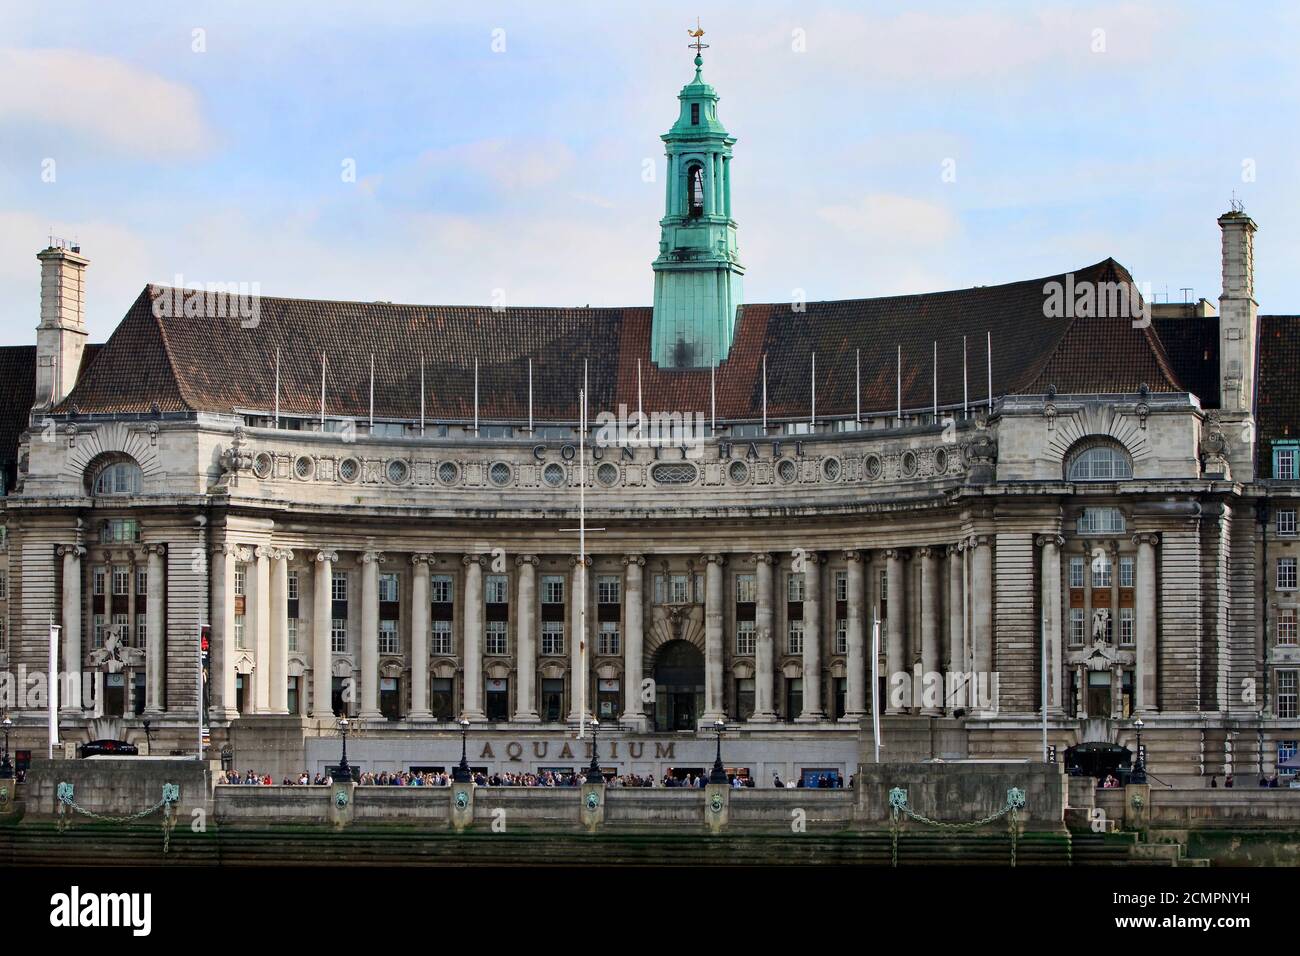 2018, Londra, Regno Unito. Il County Hall, sulla riva sud del Tamigi, ospita l'acquario di Londra e altre attrazioni turistiche. È molto popu Foto Stock